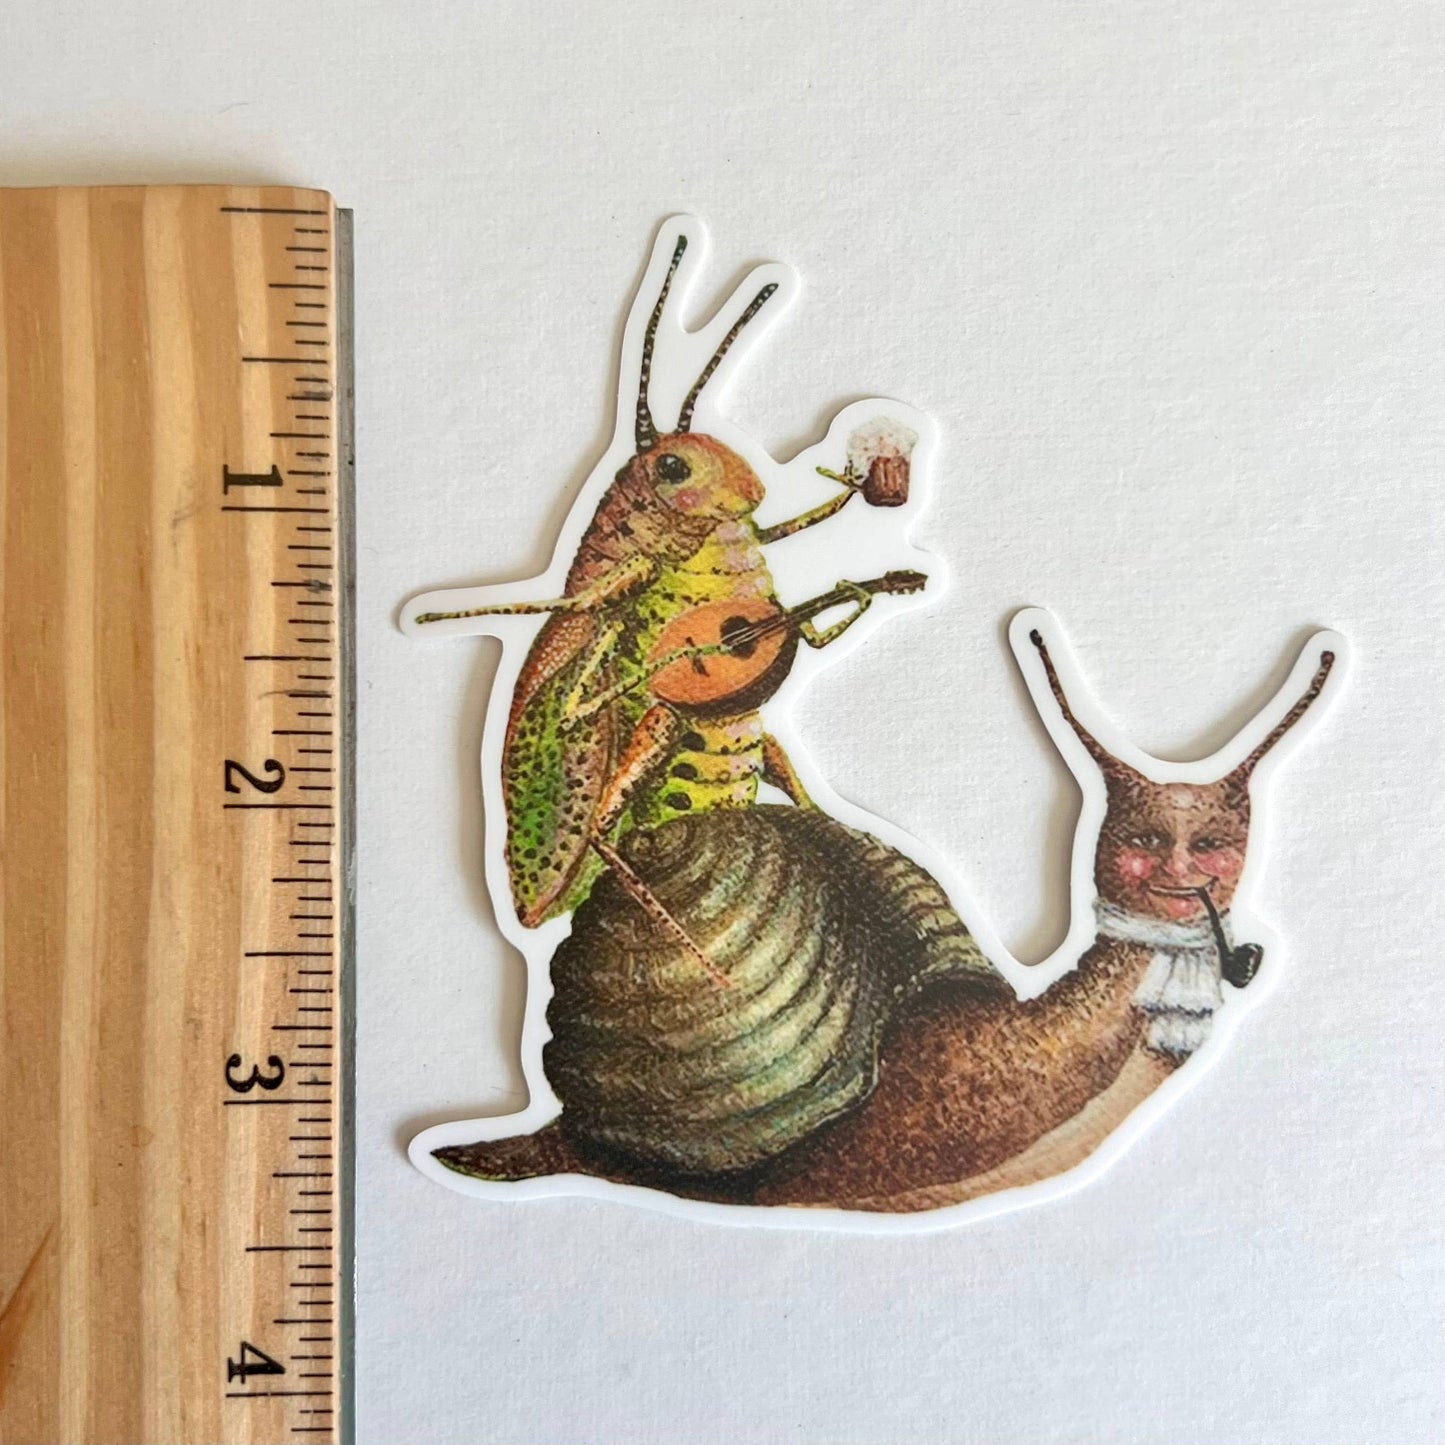 Snail & Grasshopper Pals // Die Cut Vinyl Sticker